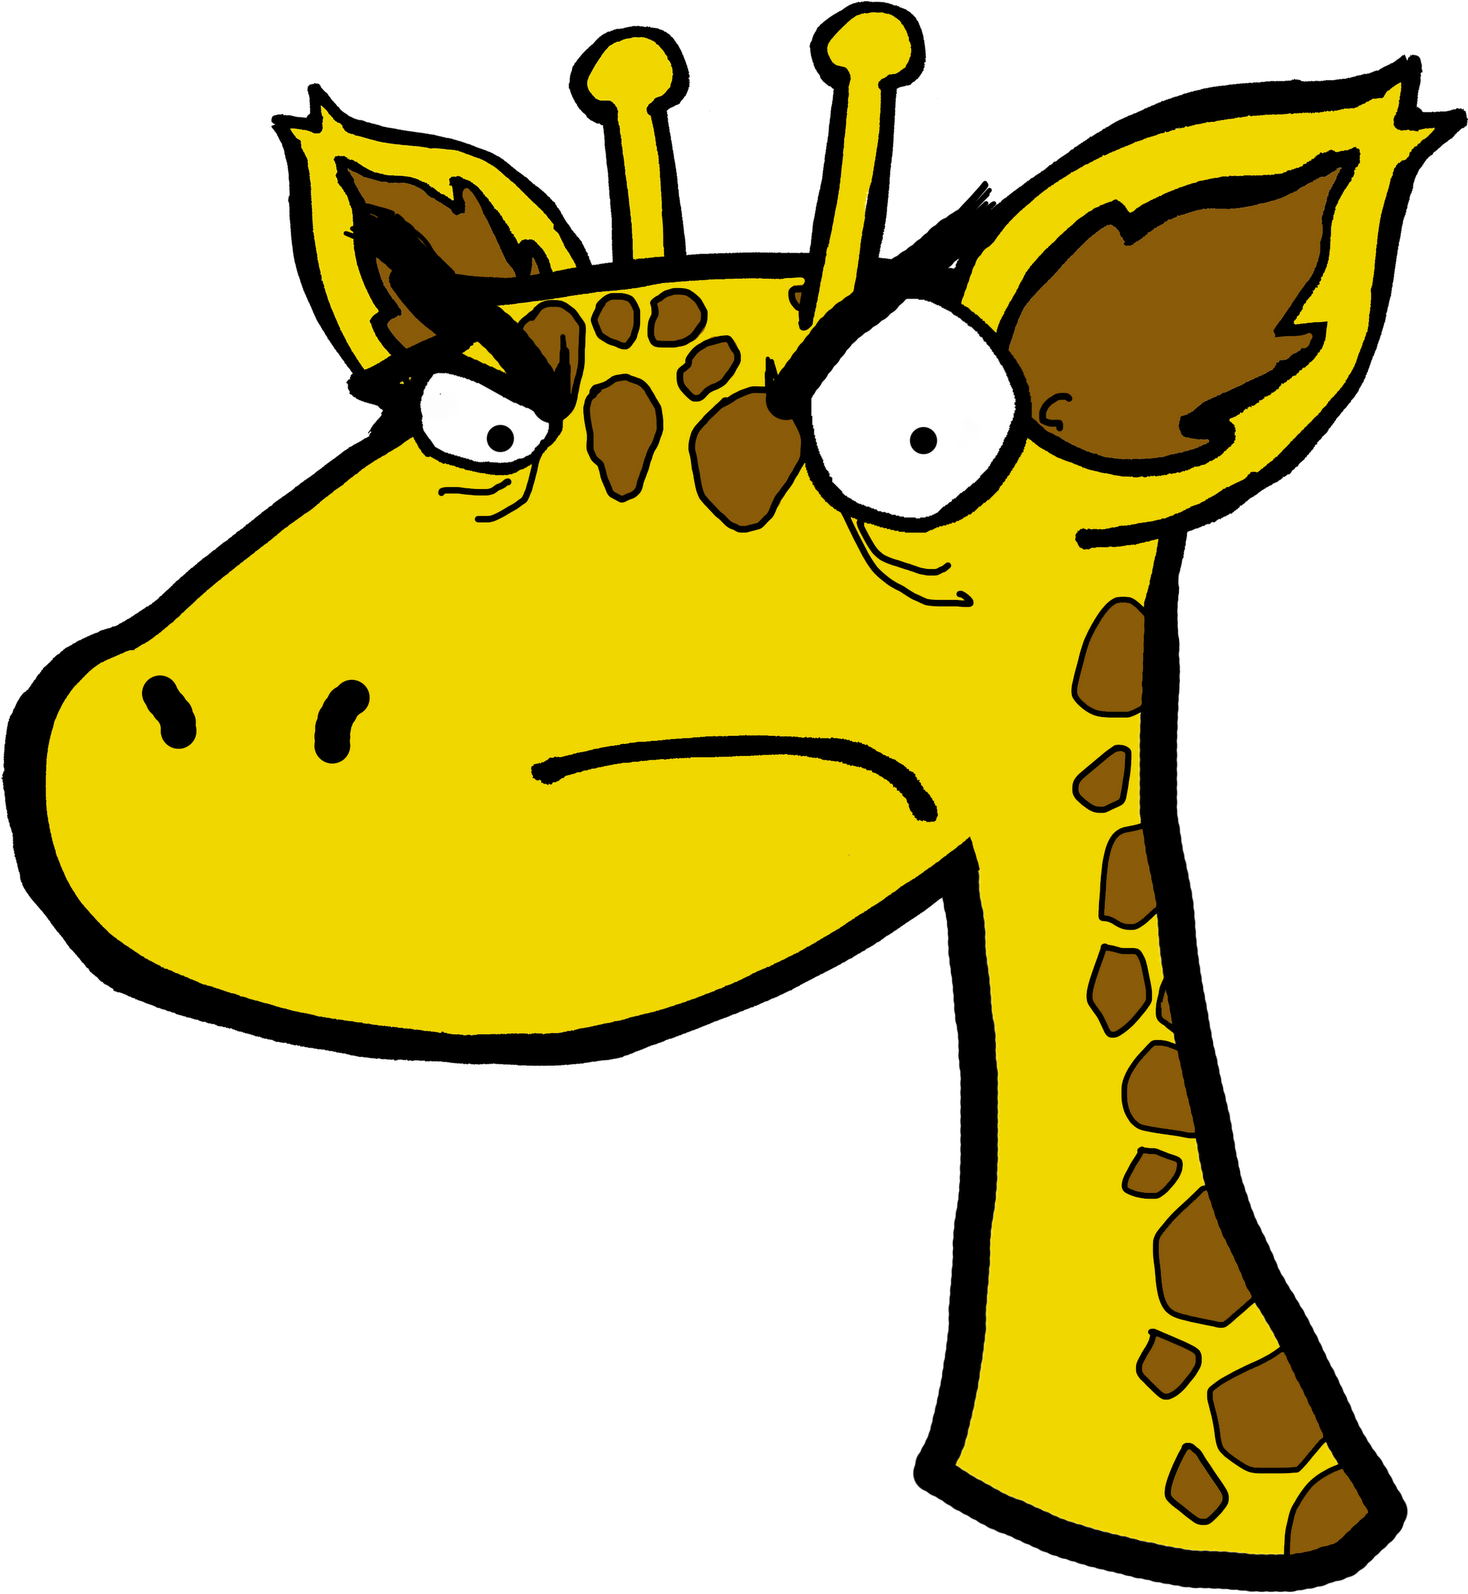 A Giraffe With A Sad Face